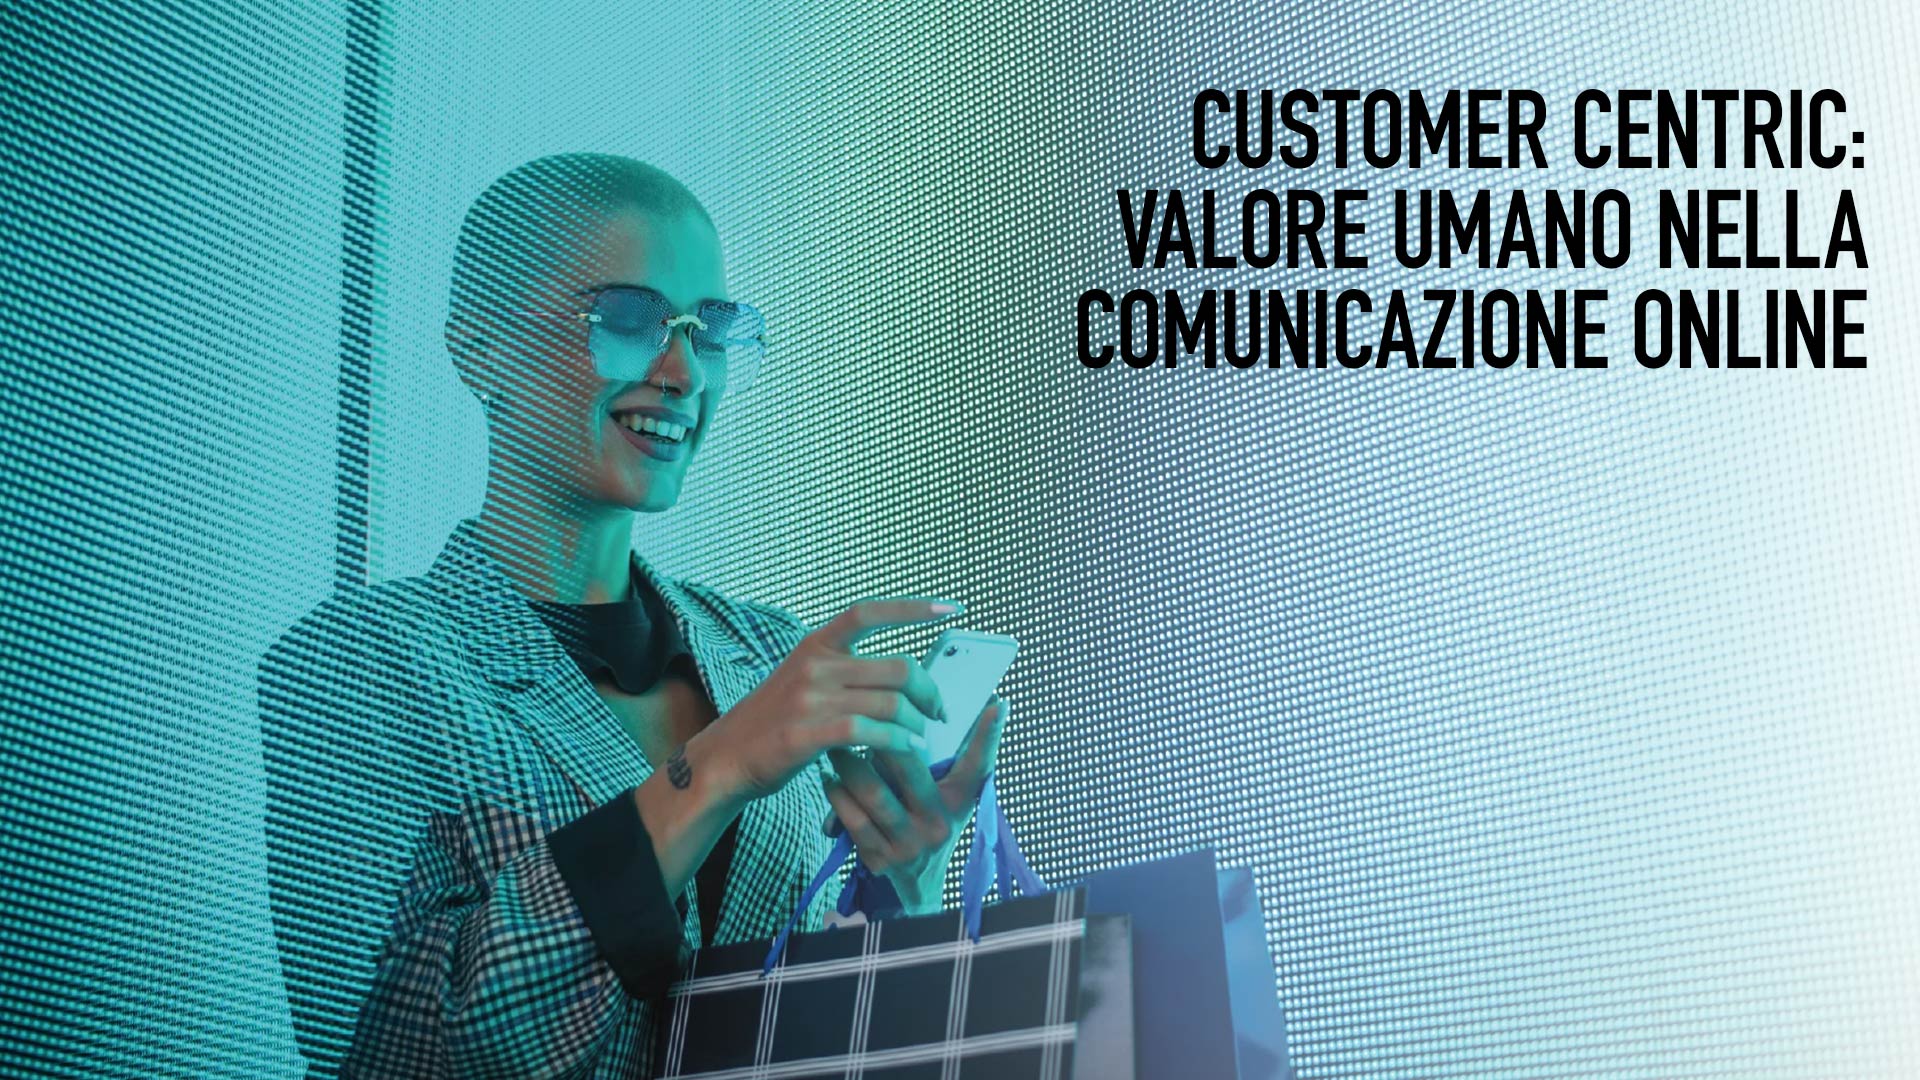 Customer Centric: valore umano nella comunicazione online